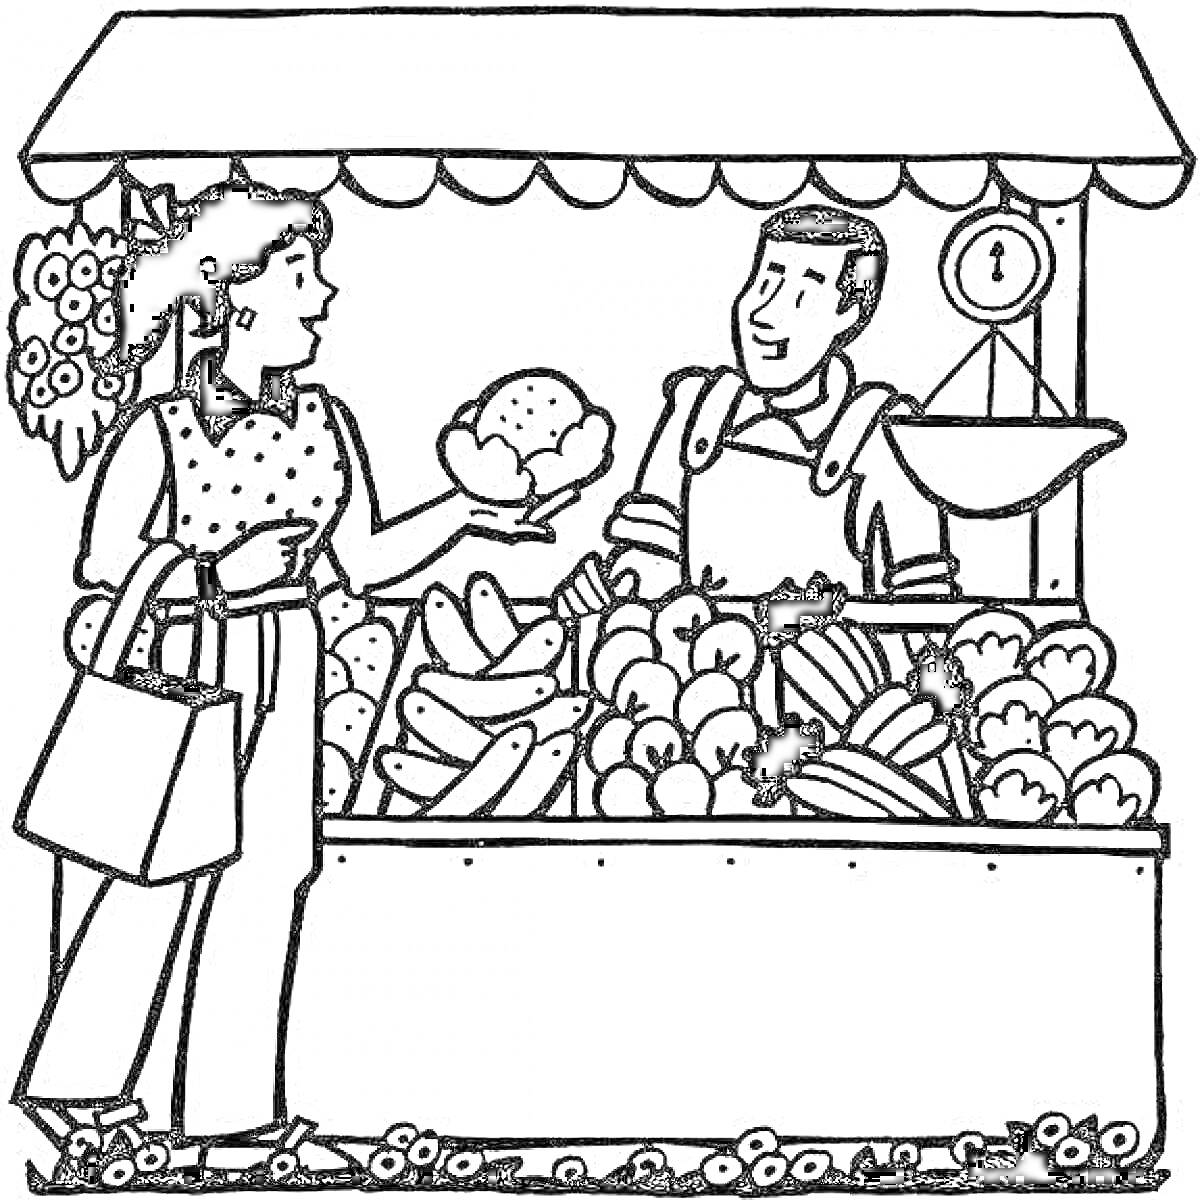 Раскраска Покупка овощей на рынке, женщина выбирает цветную капусту, продавец стоит за стойкой с весами, на прилавке много различных овощей